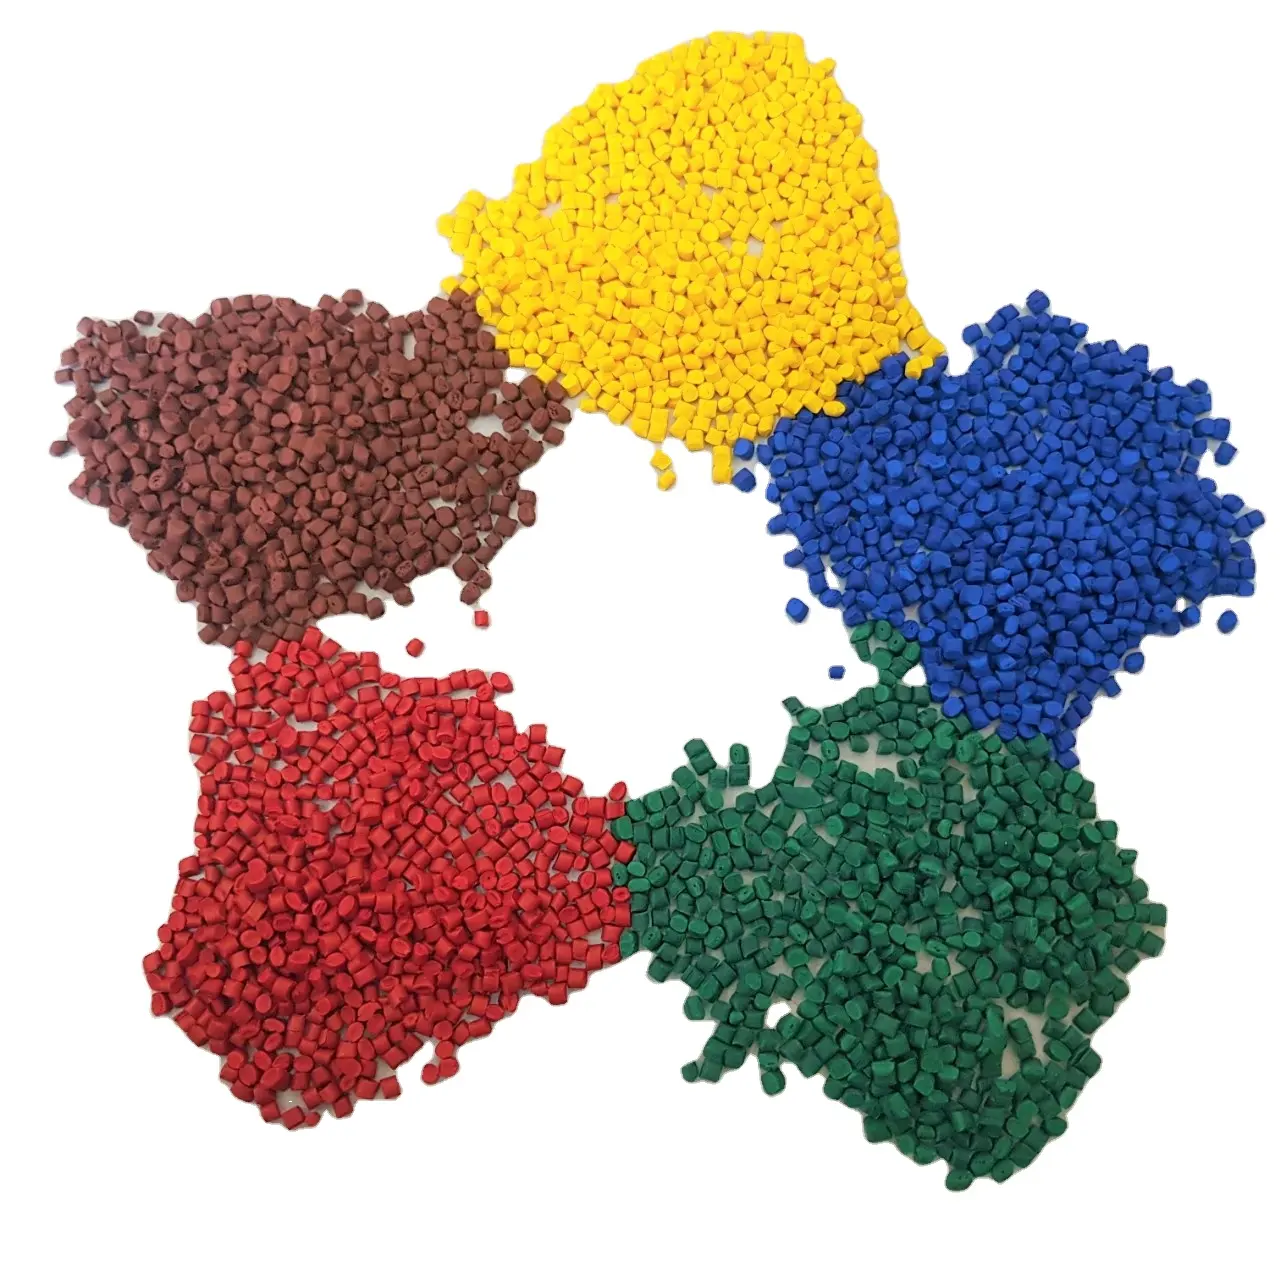 Бесплатные образцы пластикового цветного пигмента в гранулах для ПП, ПЭ. Применение: различные цвета и тени